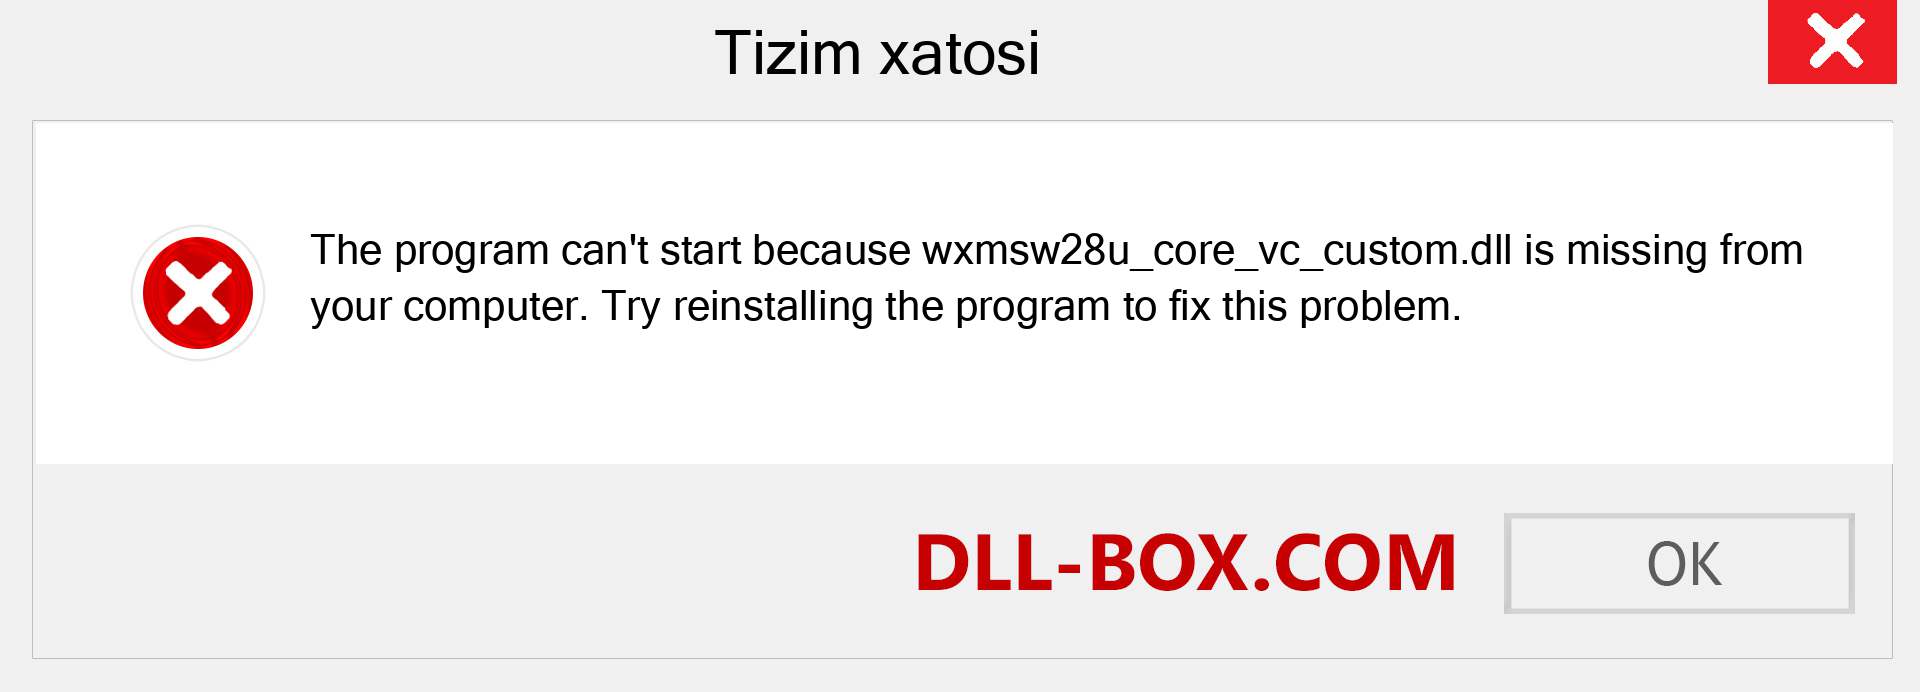 wxmsw28u_core_vc_custom.dll fayli yo'qolganmi?. Windows 7, 8, 10 uchun yuklab olish - Windowsda wxmsw28u_core_vc_custom dll etishmayotgan xatoni tuzating, rasmlar, rasmlar